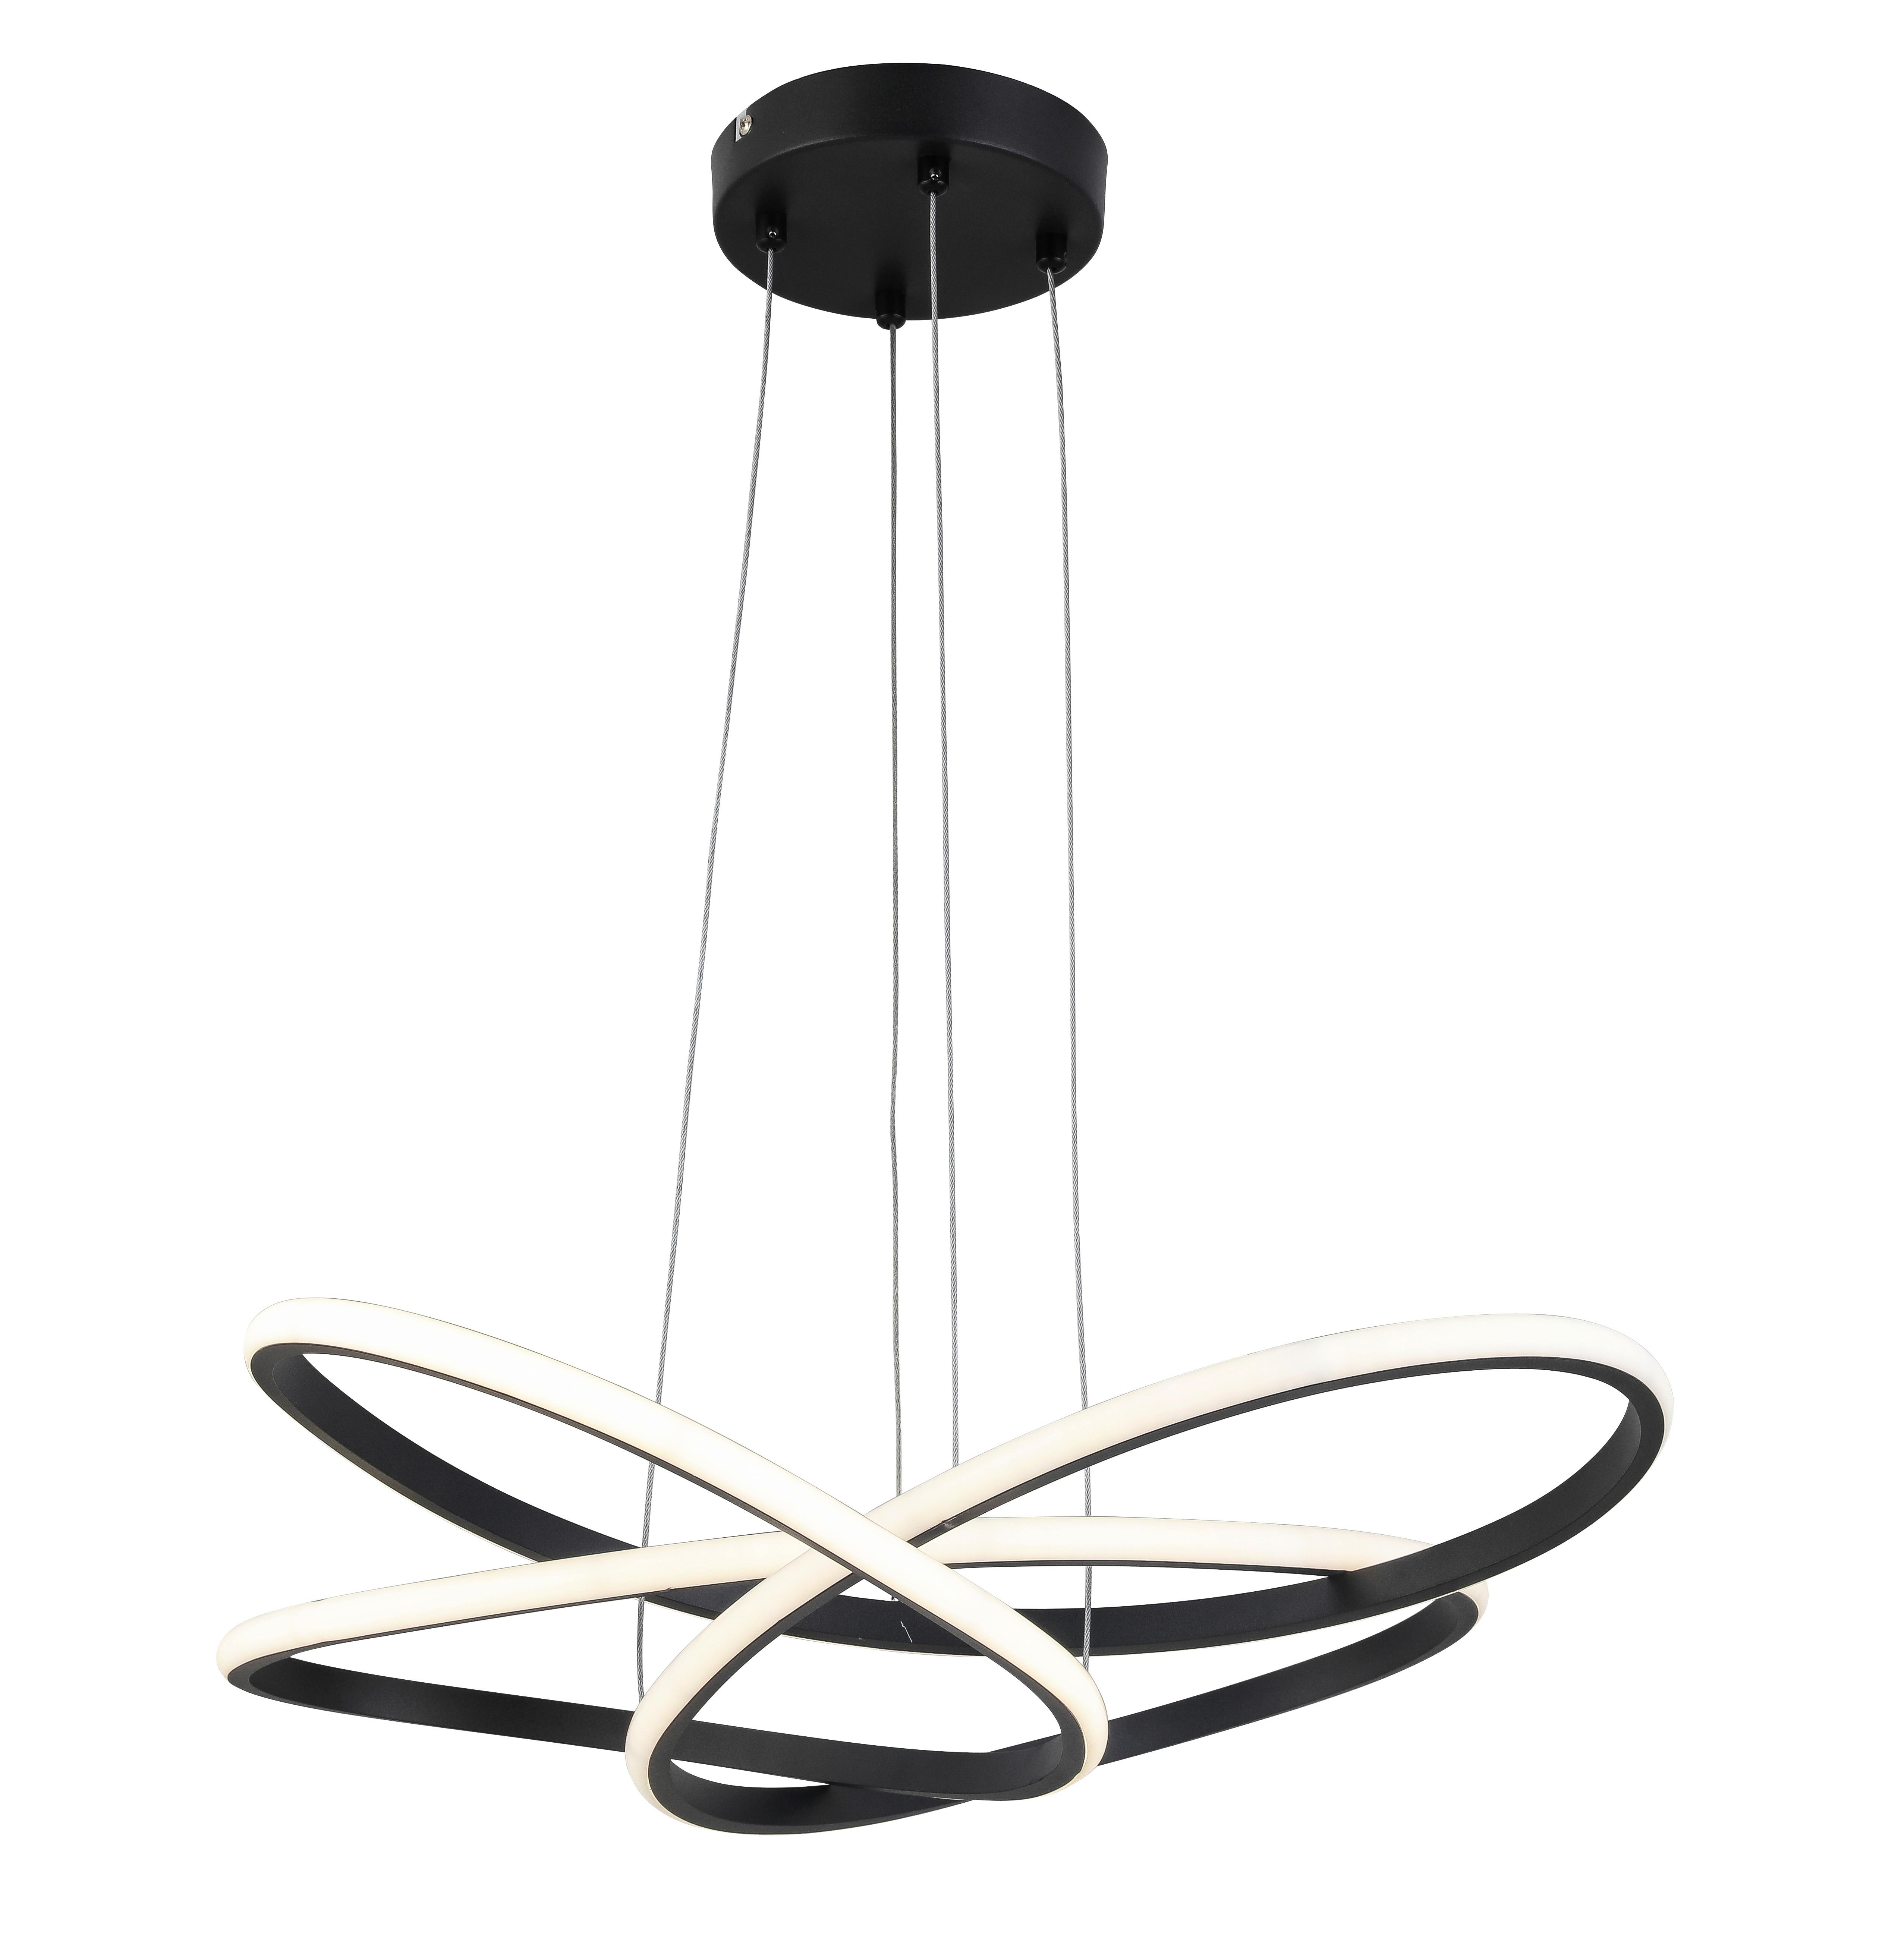 Viseča Led-svetilka Oliveio - črna, Moderno, kovina/umetna masa (60/120cm) - Premium Living